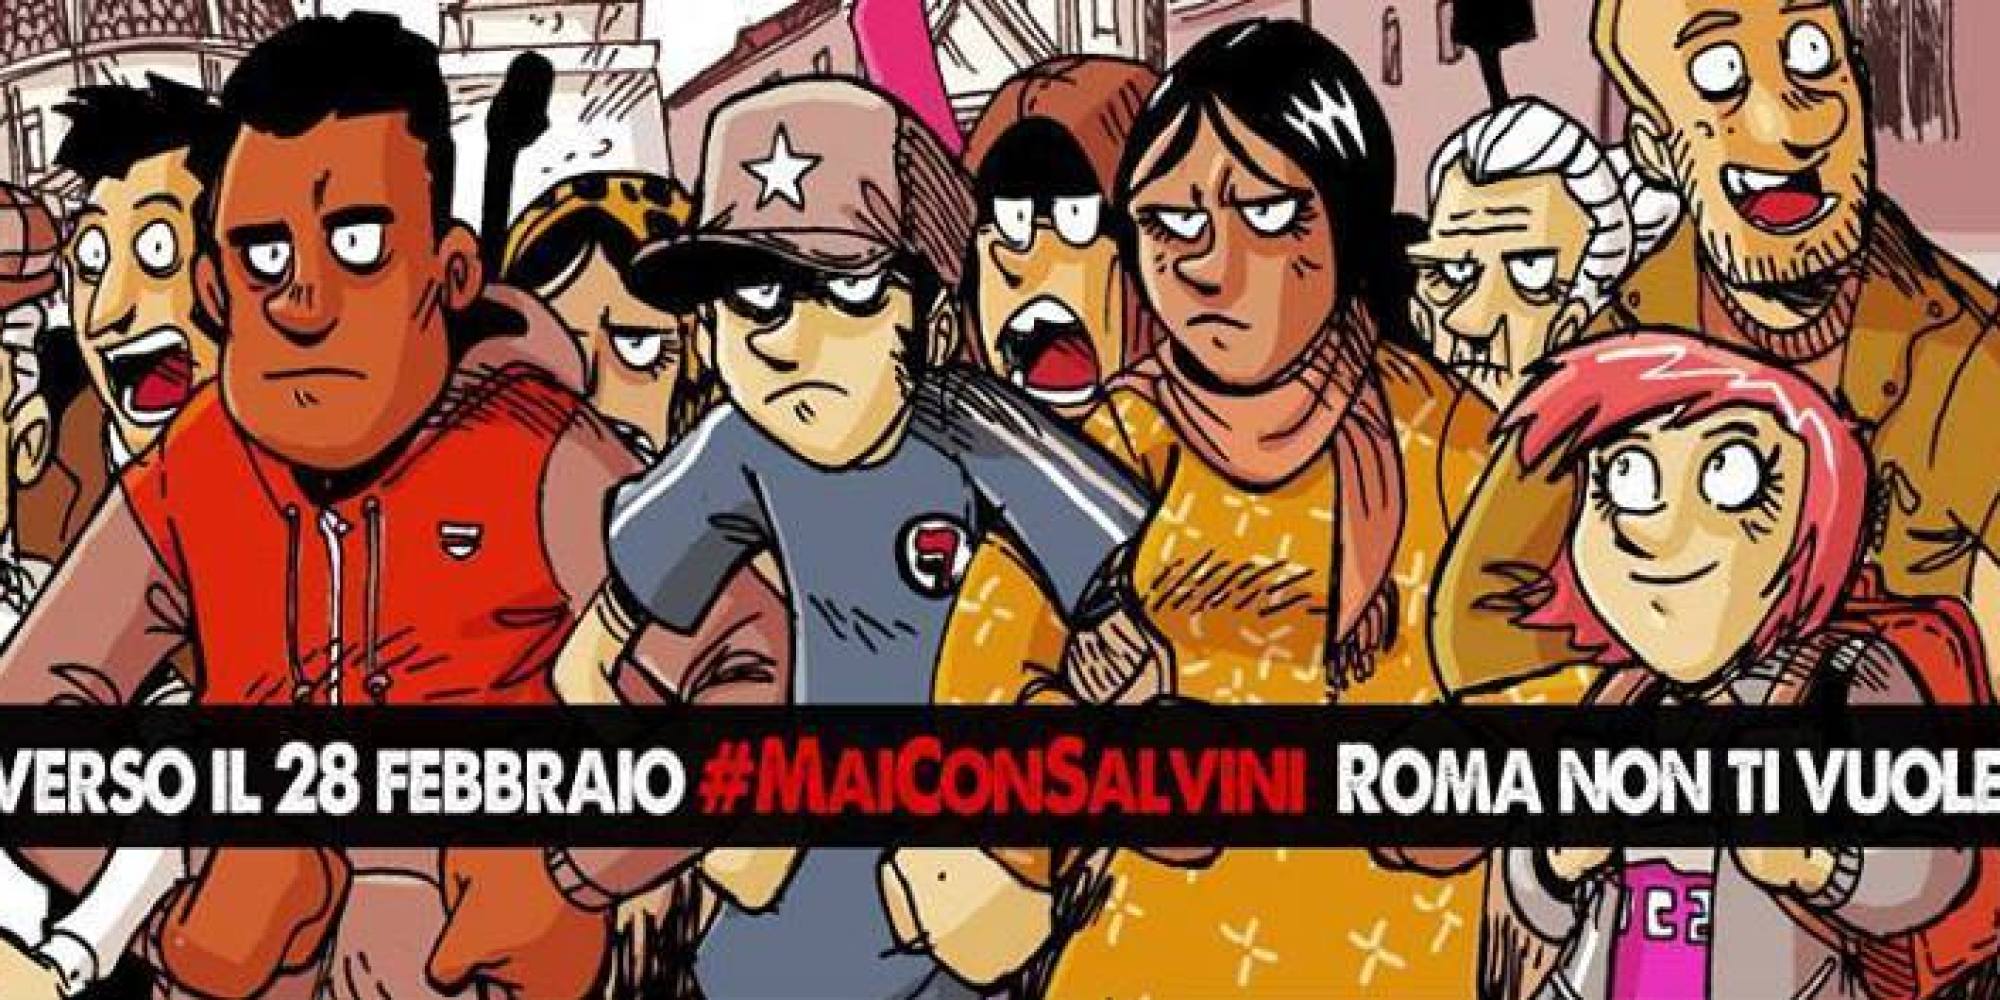 Mai con Salvini, per contrastare il progetto funesto dei fascio-leghisti